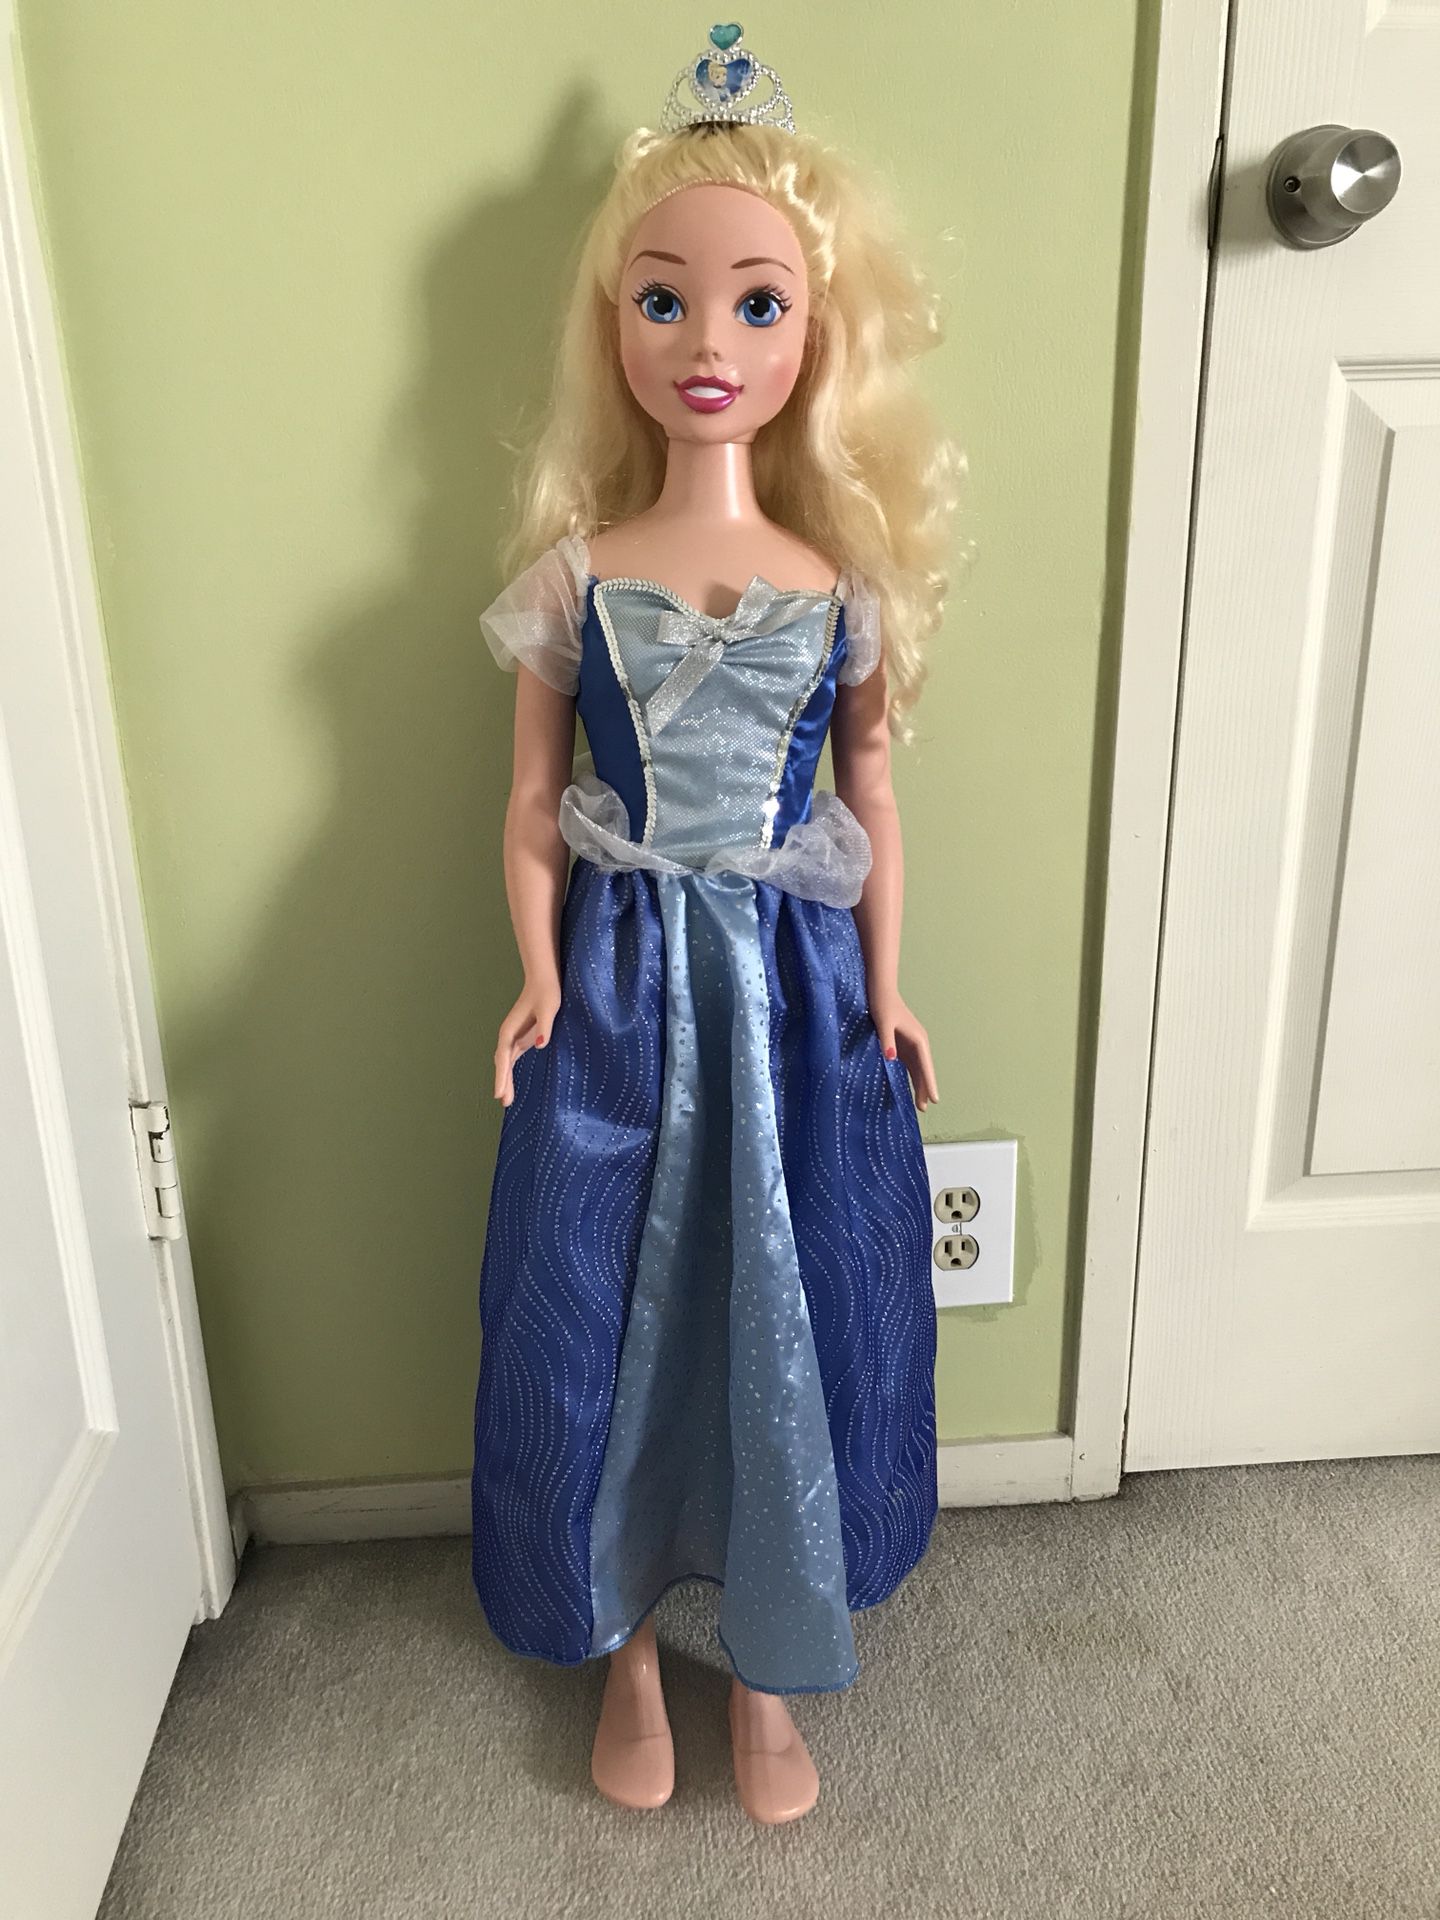 Cinderella Life Sized Doll